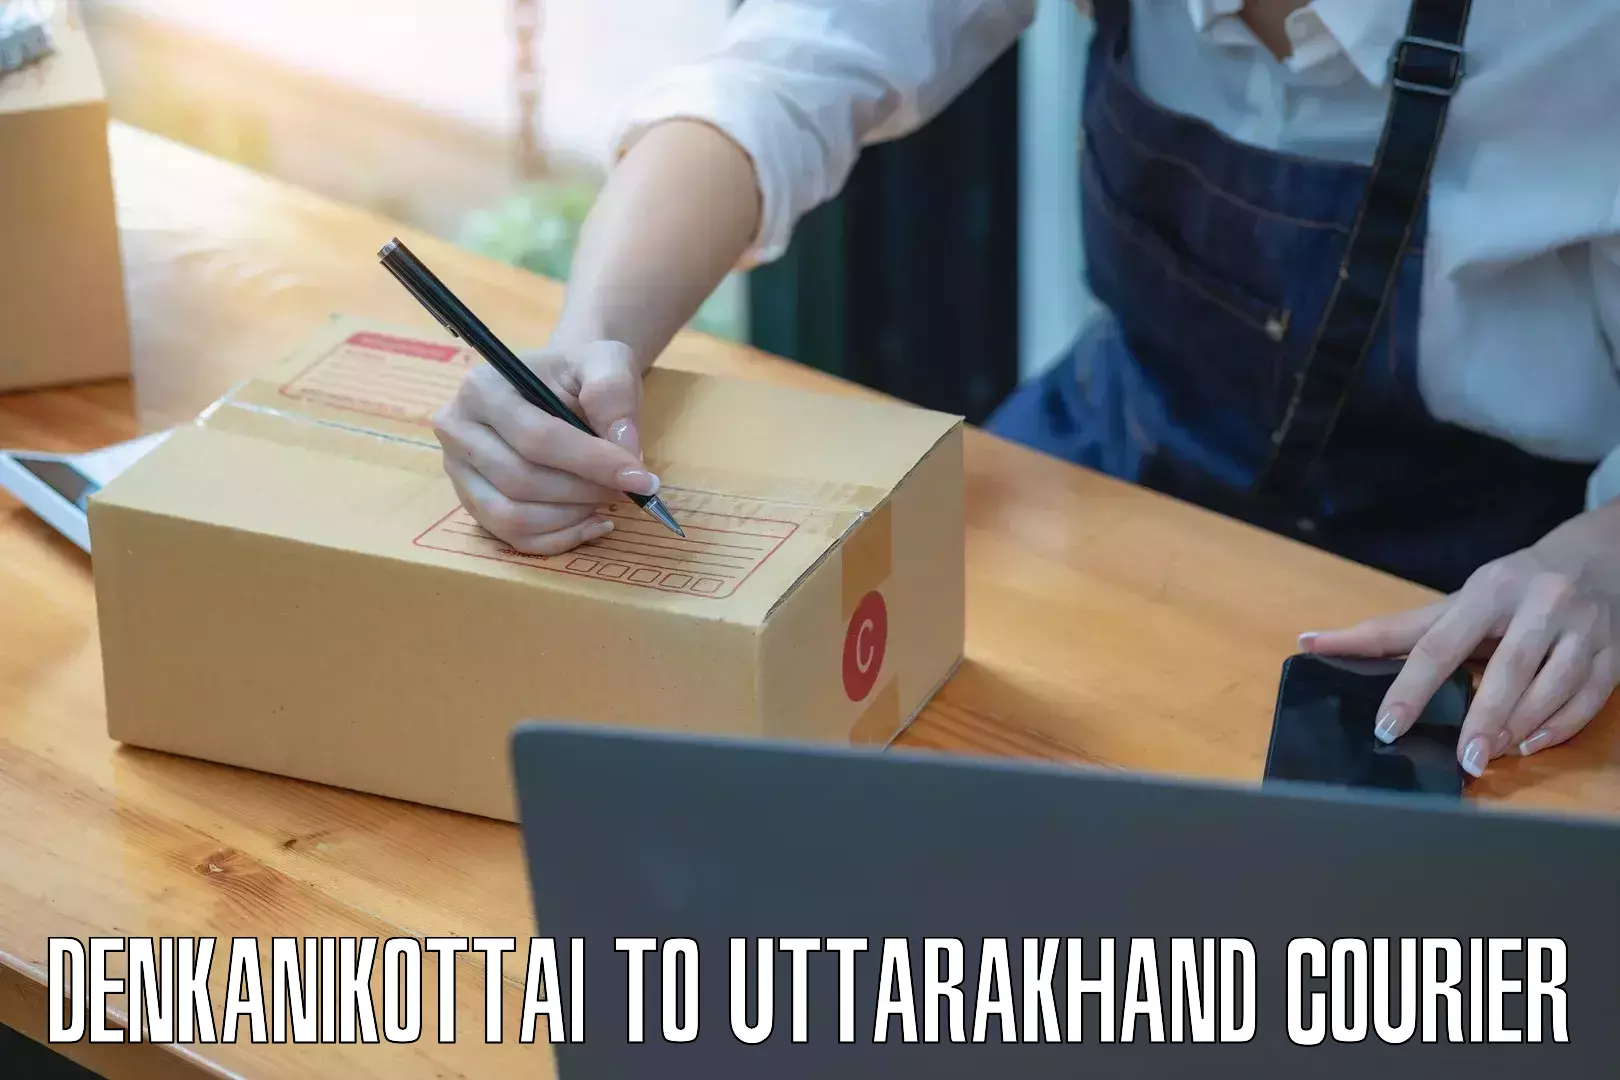 Affordable parcel rates Denkanikottai to Uttarkashi